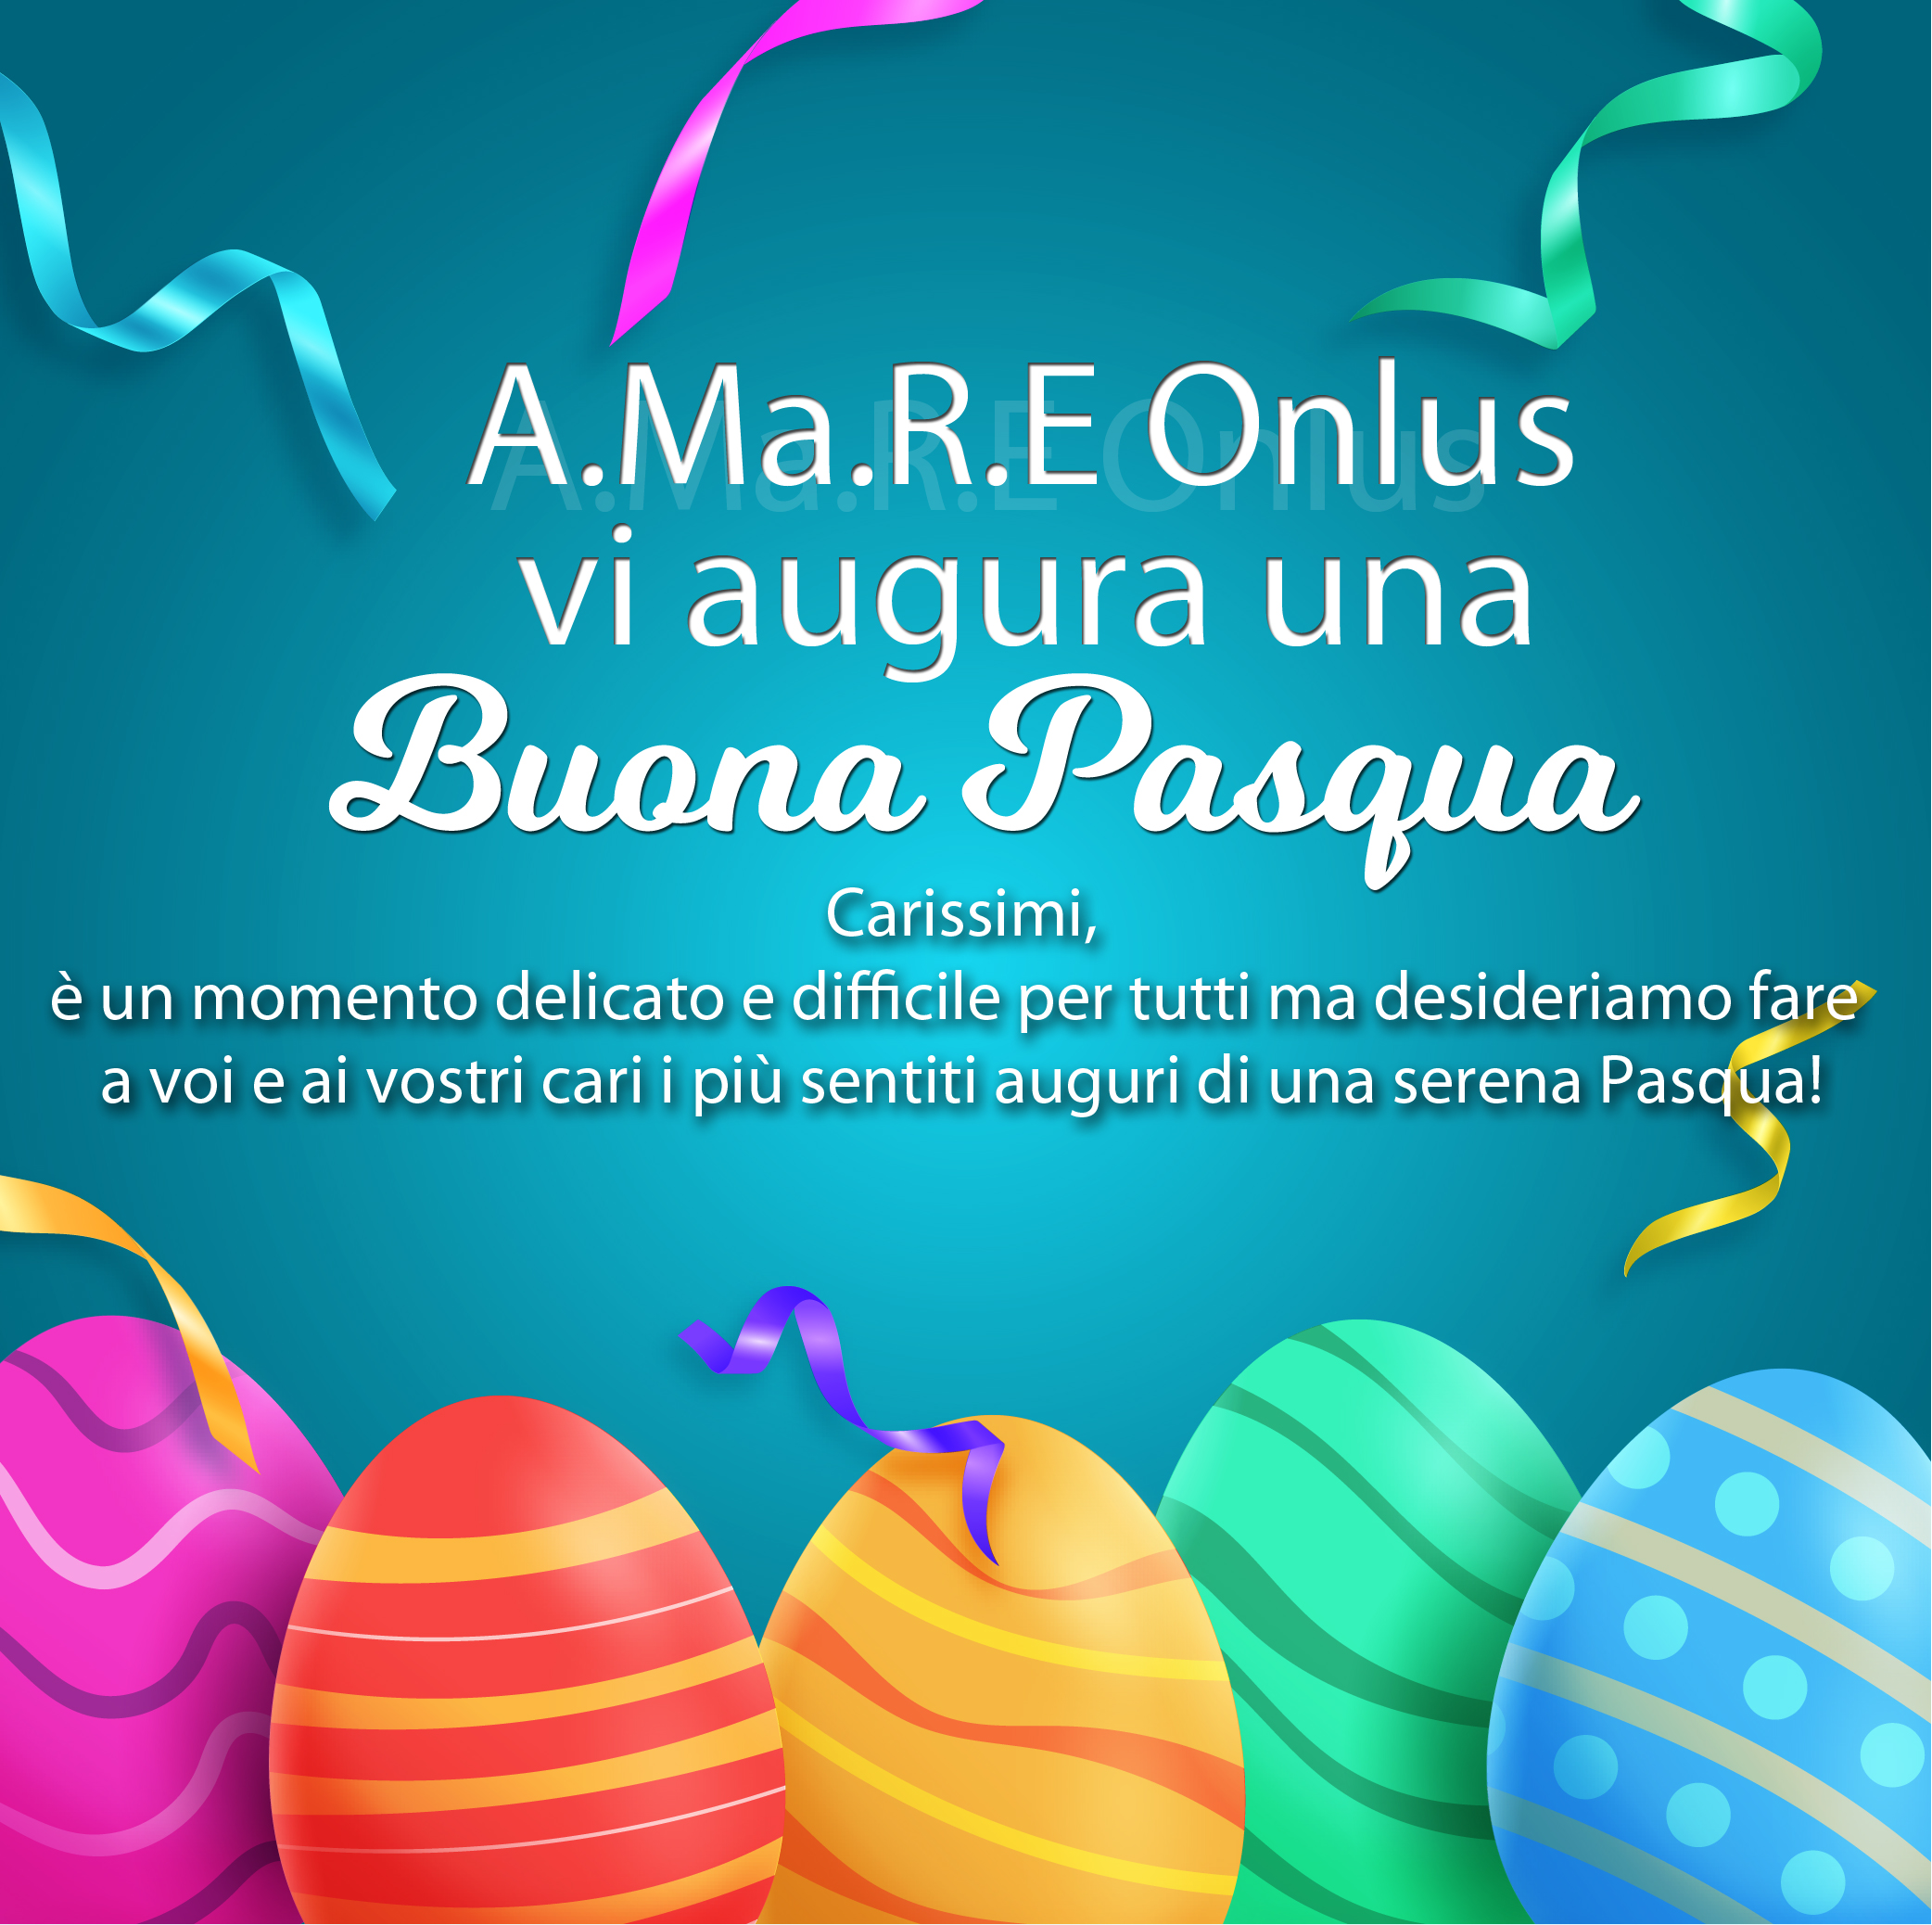 Auguri di buona Pasqua a tutti!